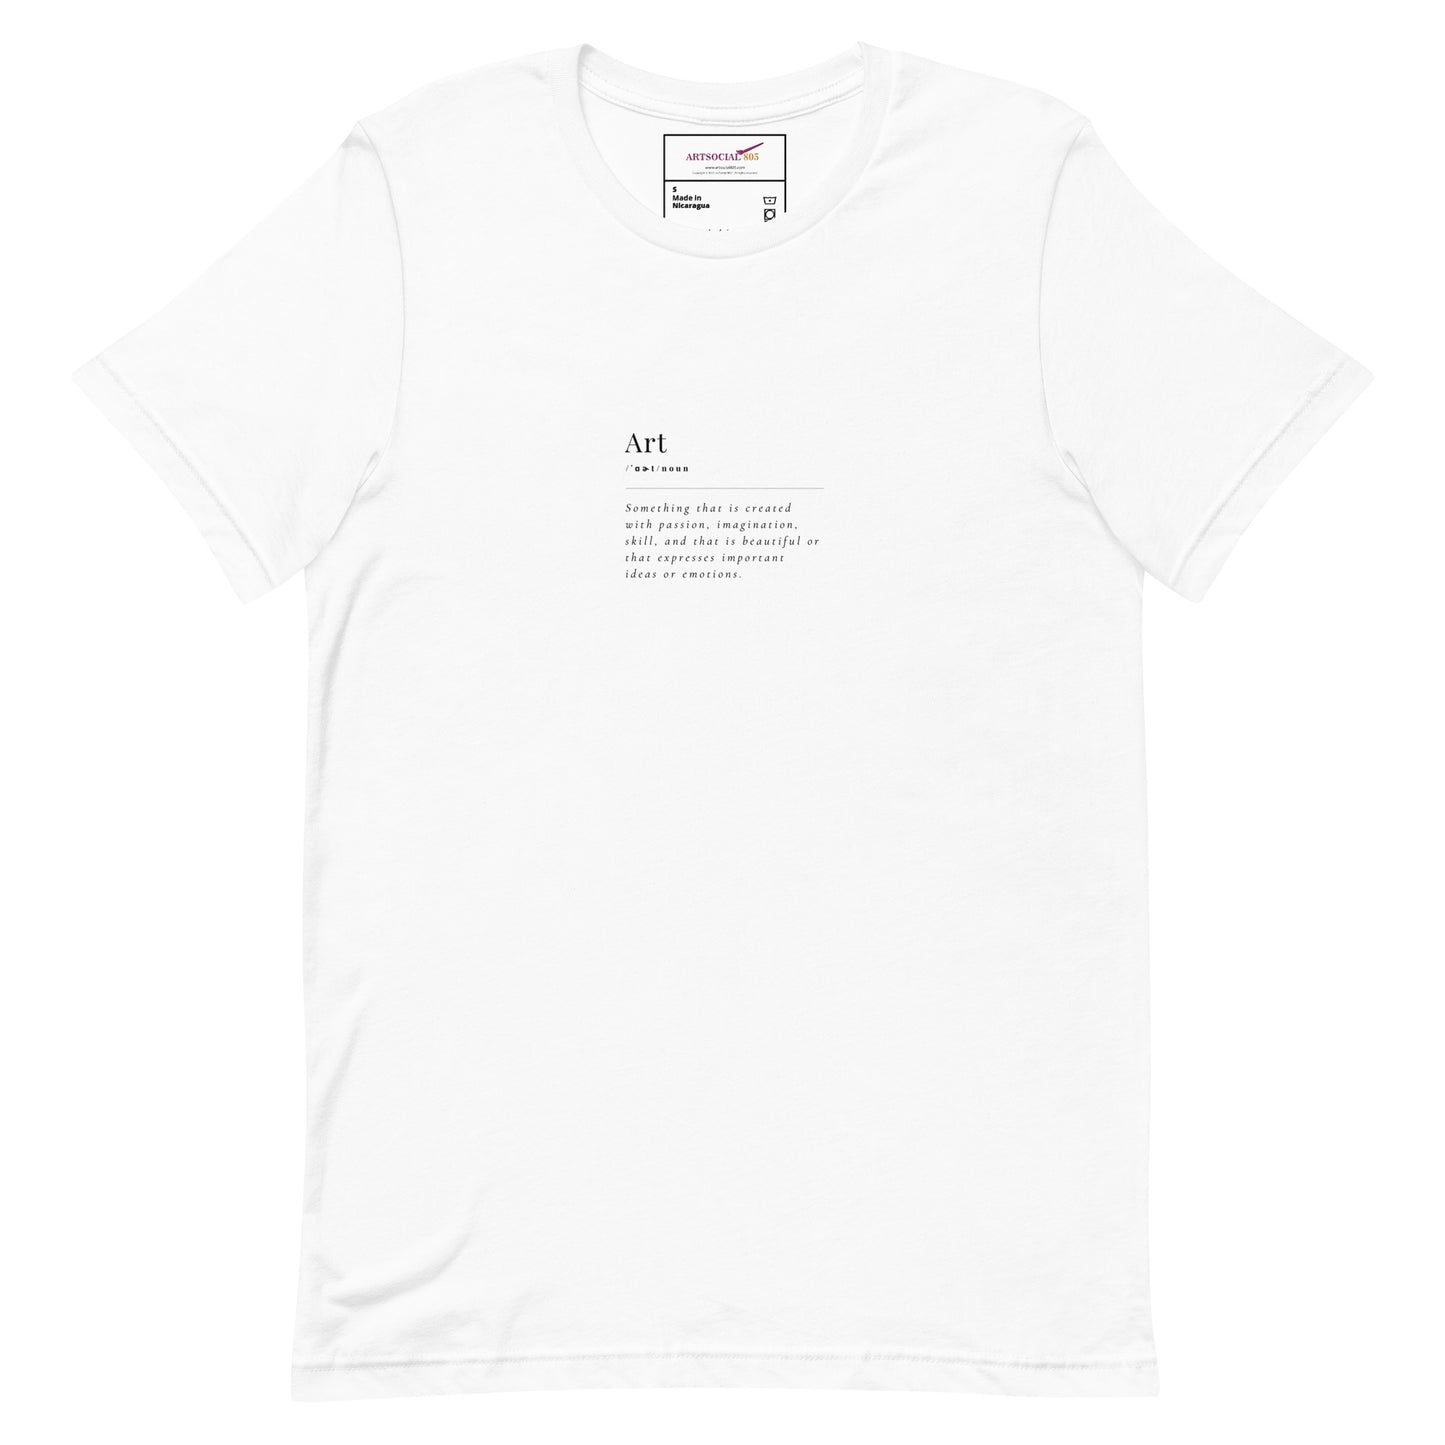 Definition of “Art” T-shirt